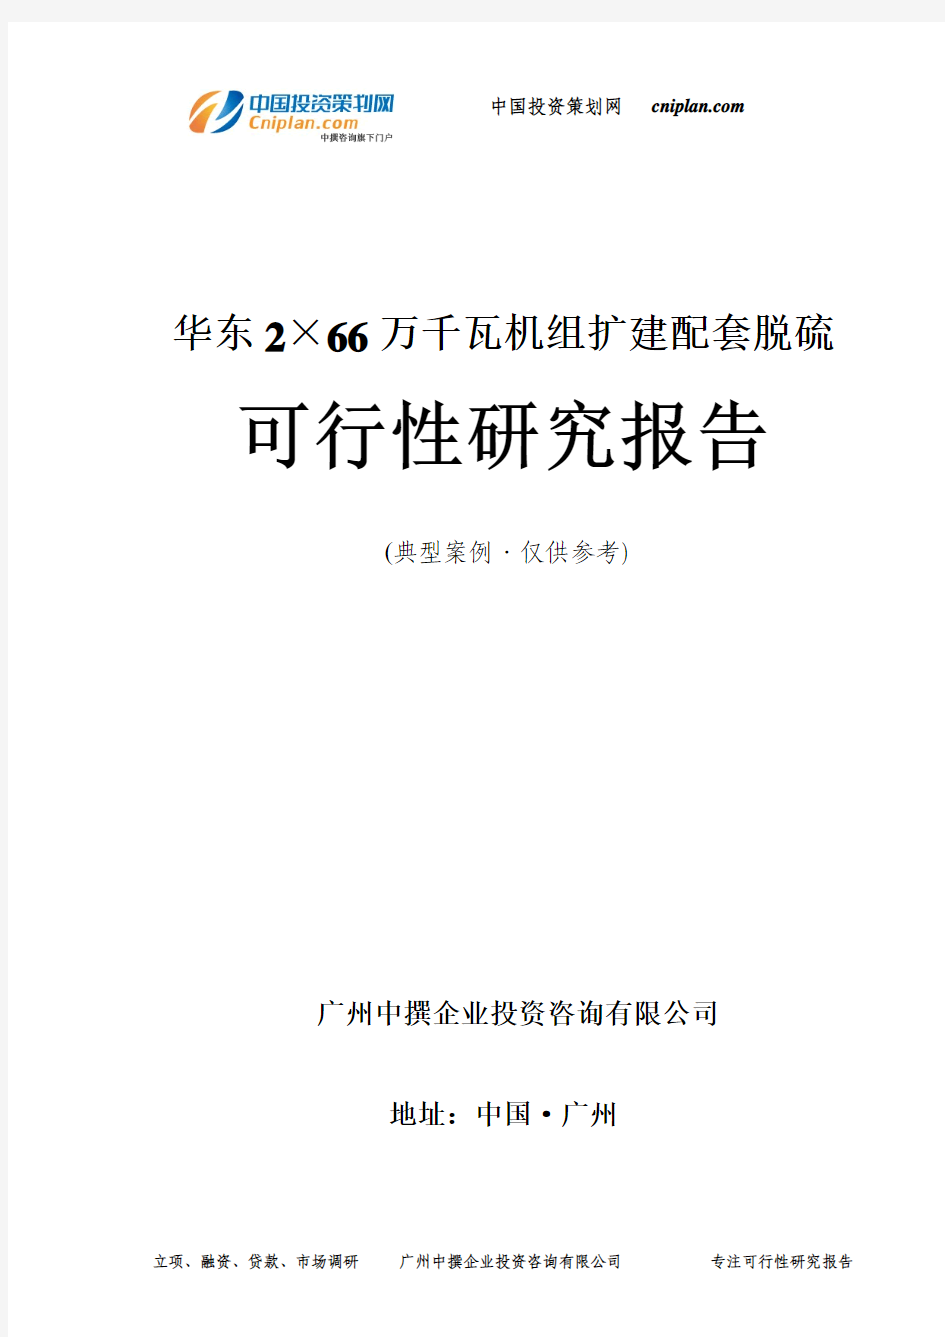 华东2×66万千瓦机组扩建配套脱硫可行性研究报告-广州中撰咨询